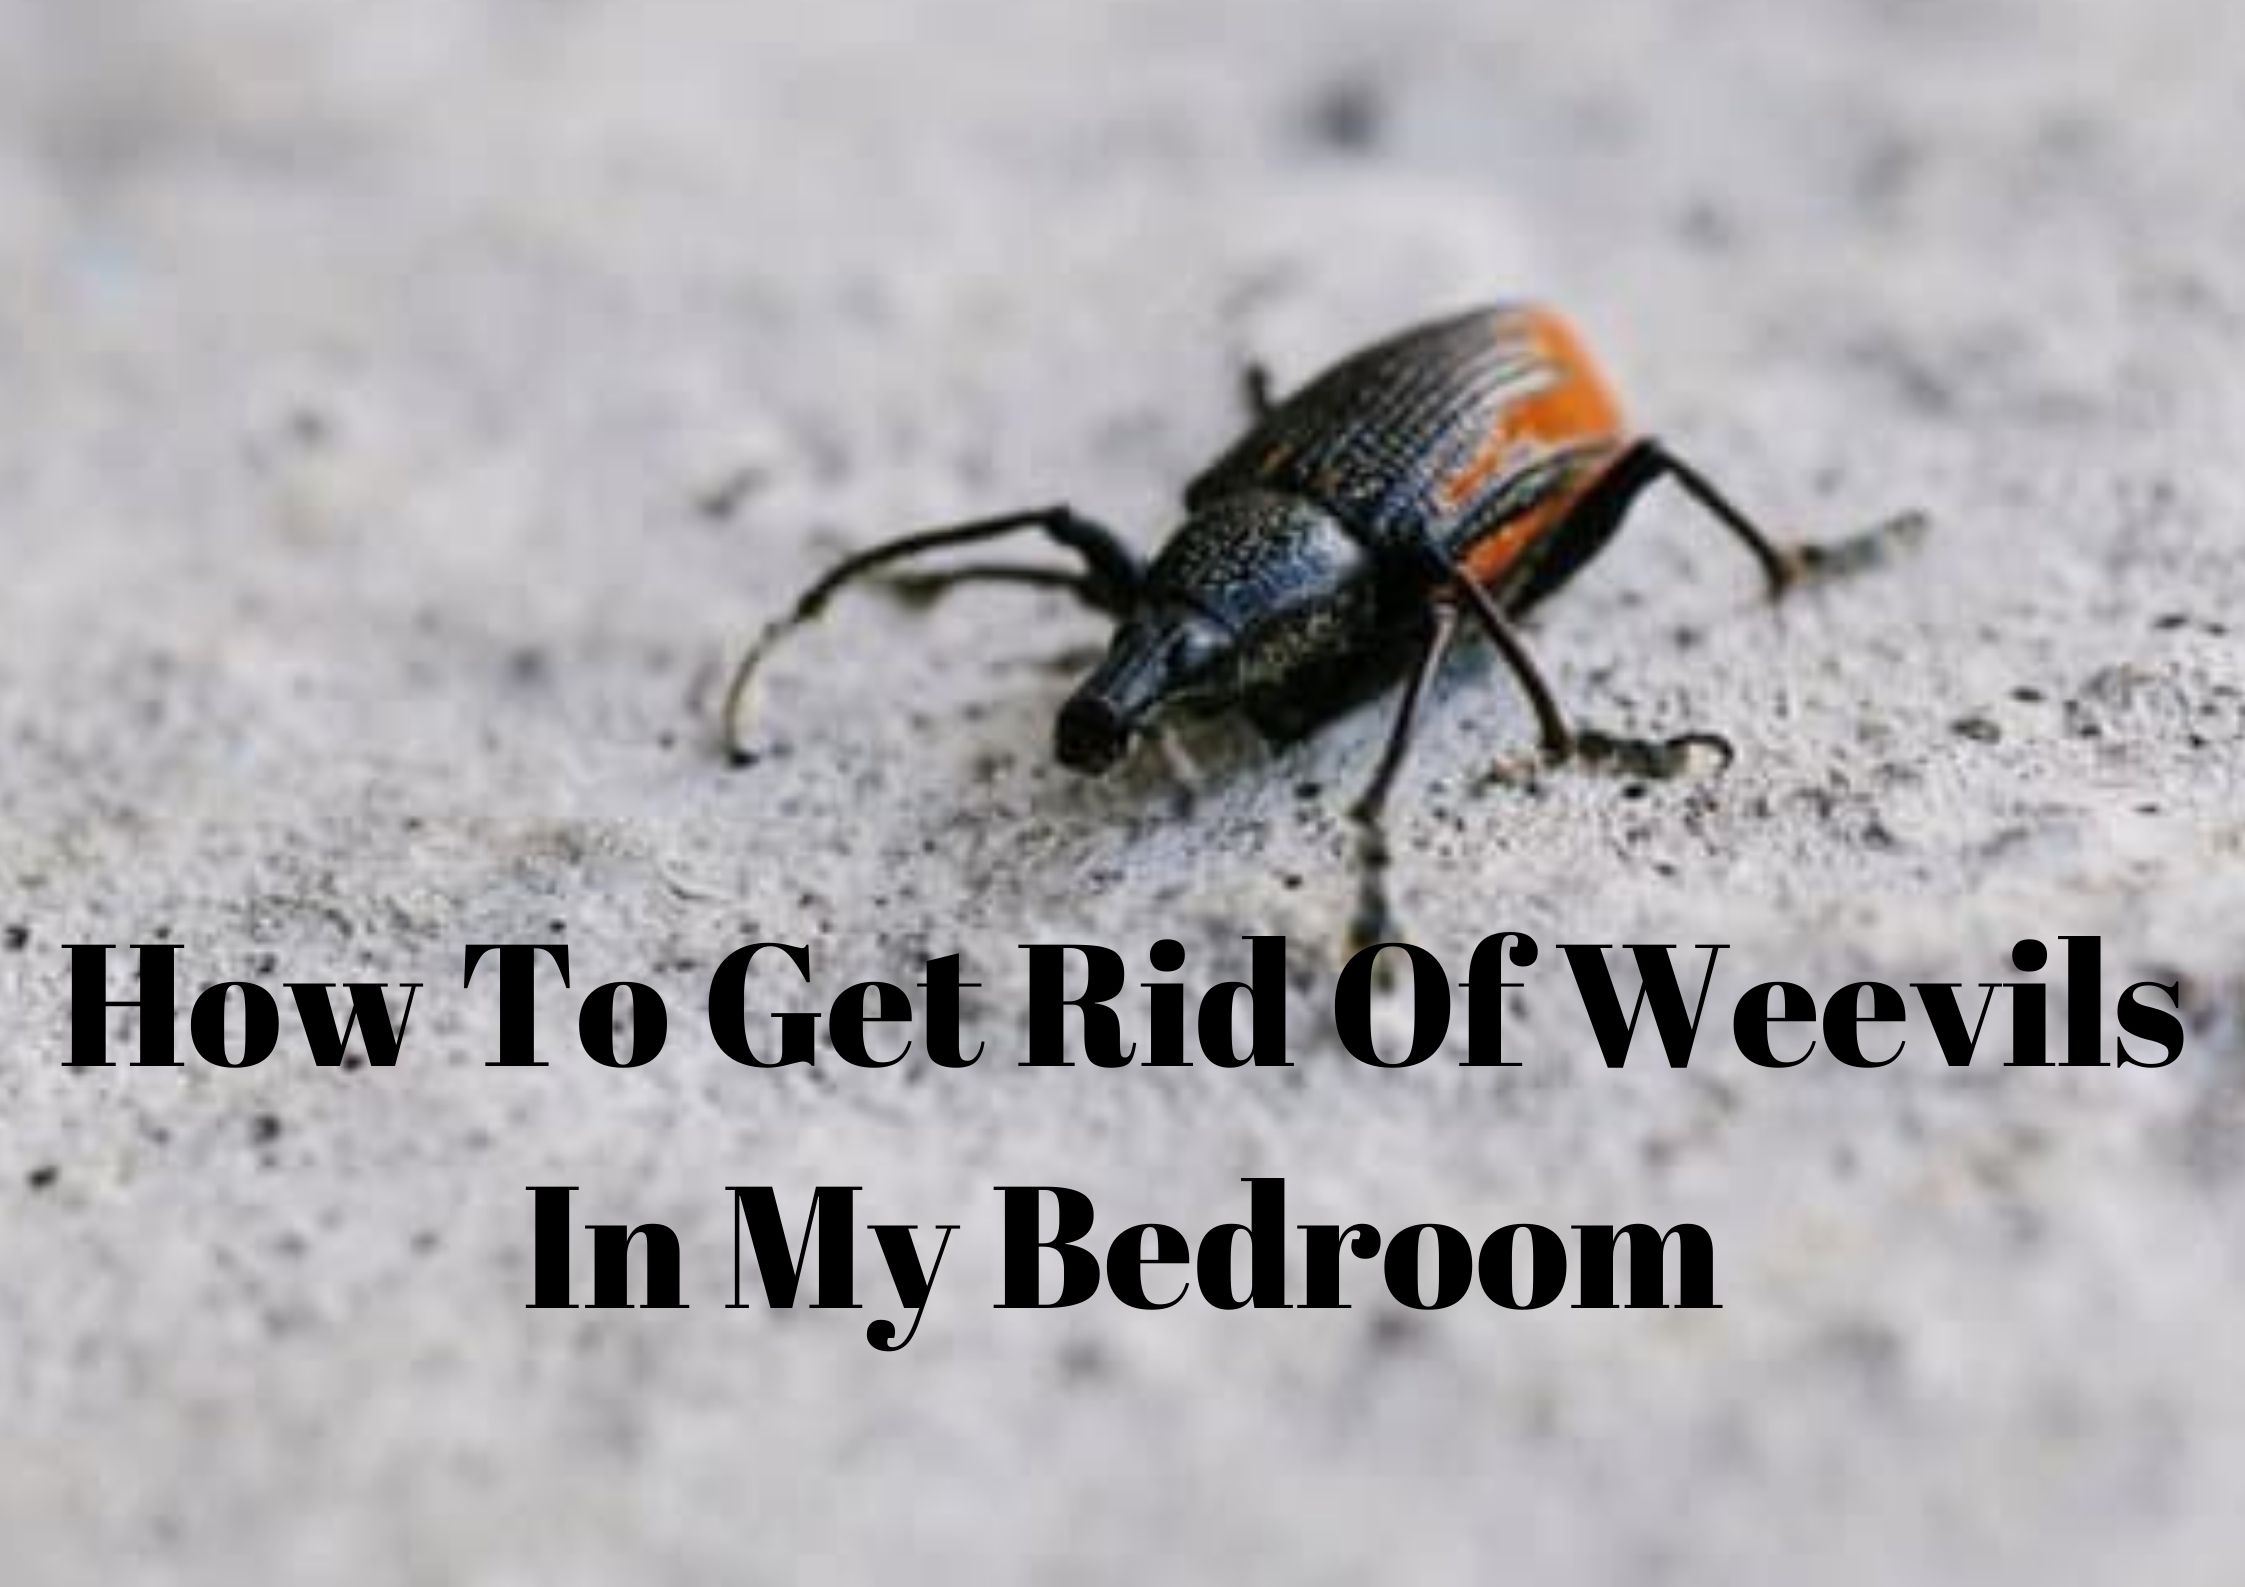 Get Rid of Weevils in My Bedroom